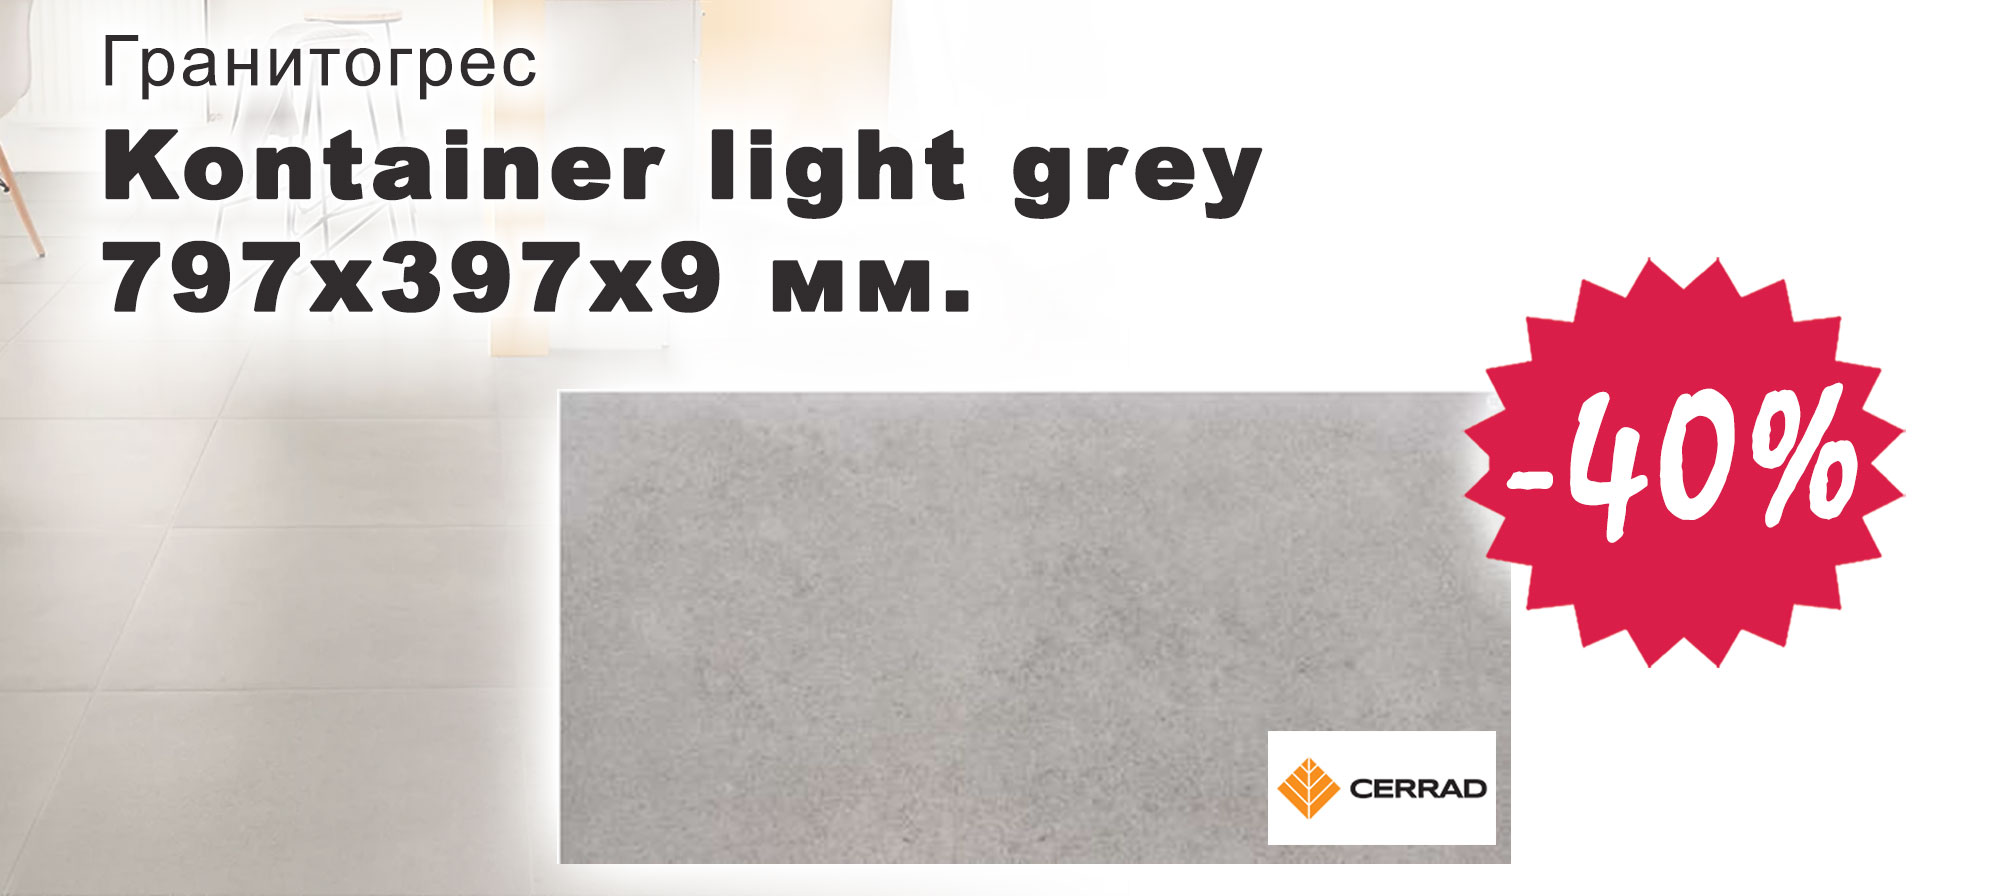 Гранитогрес Kontainer light grey с 40% отстъпка